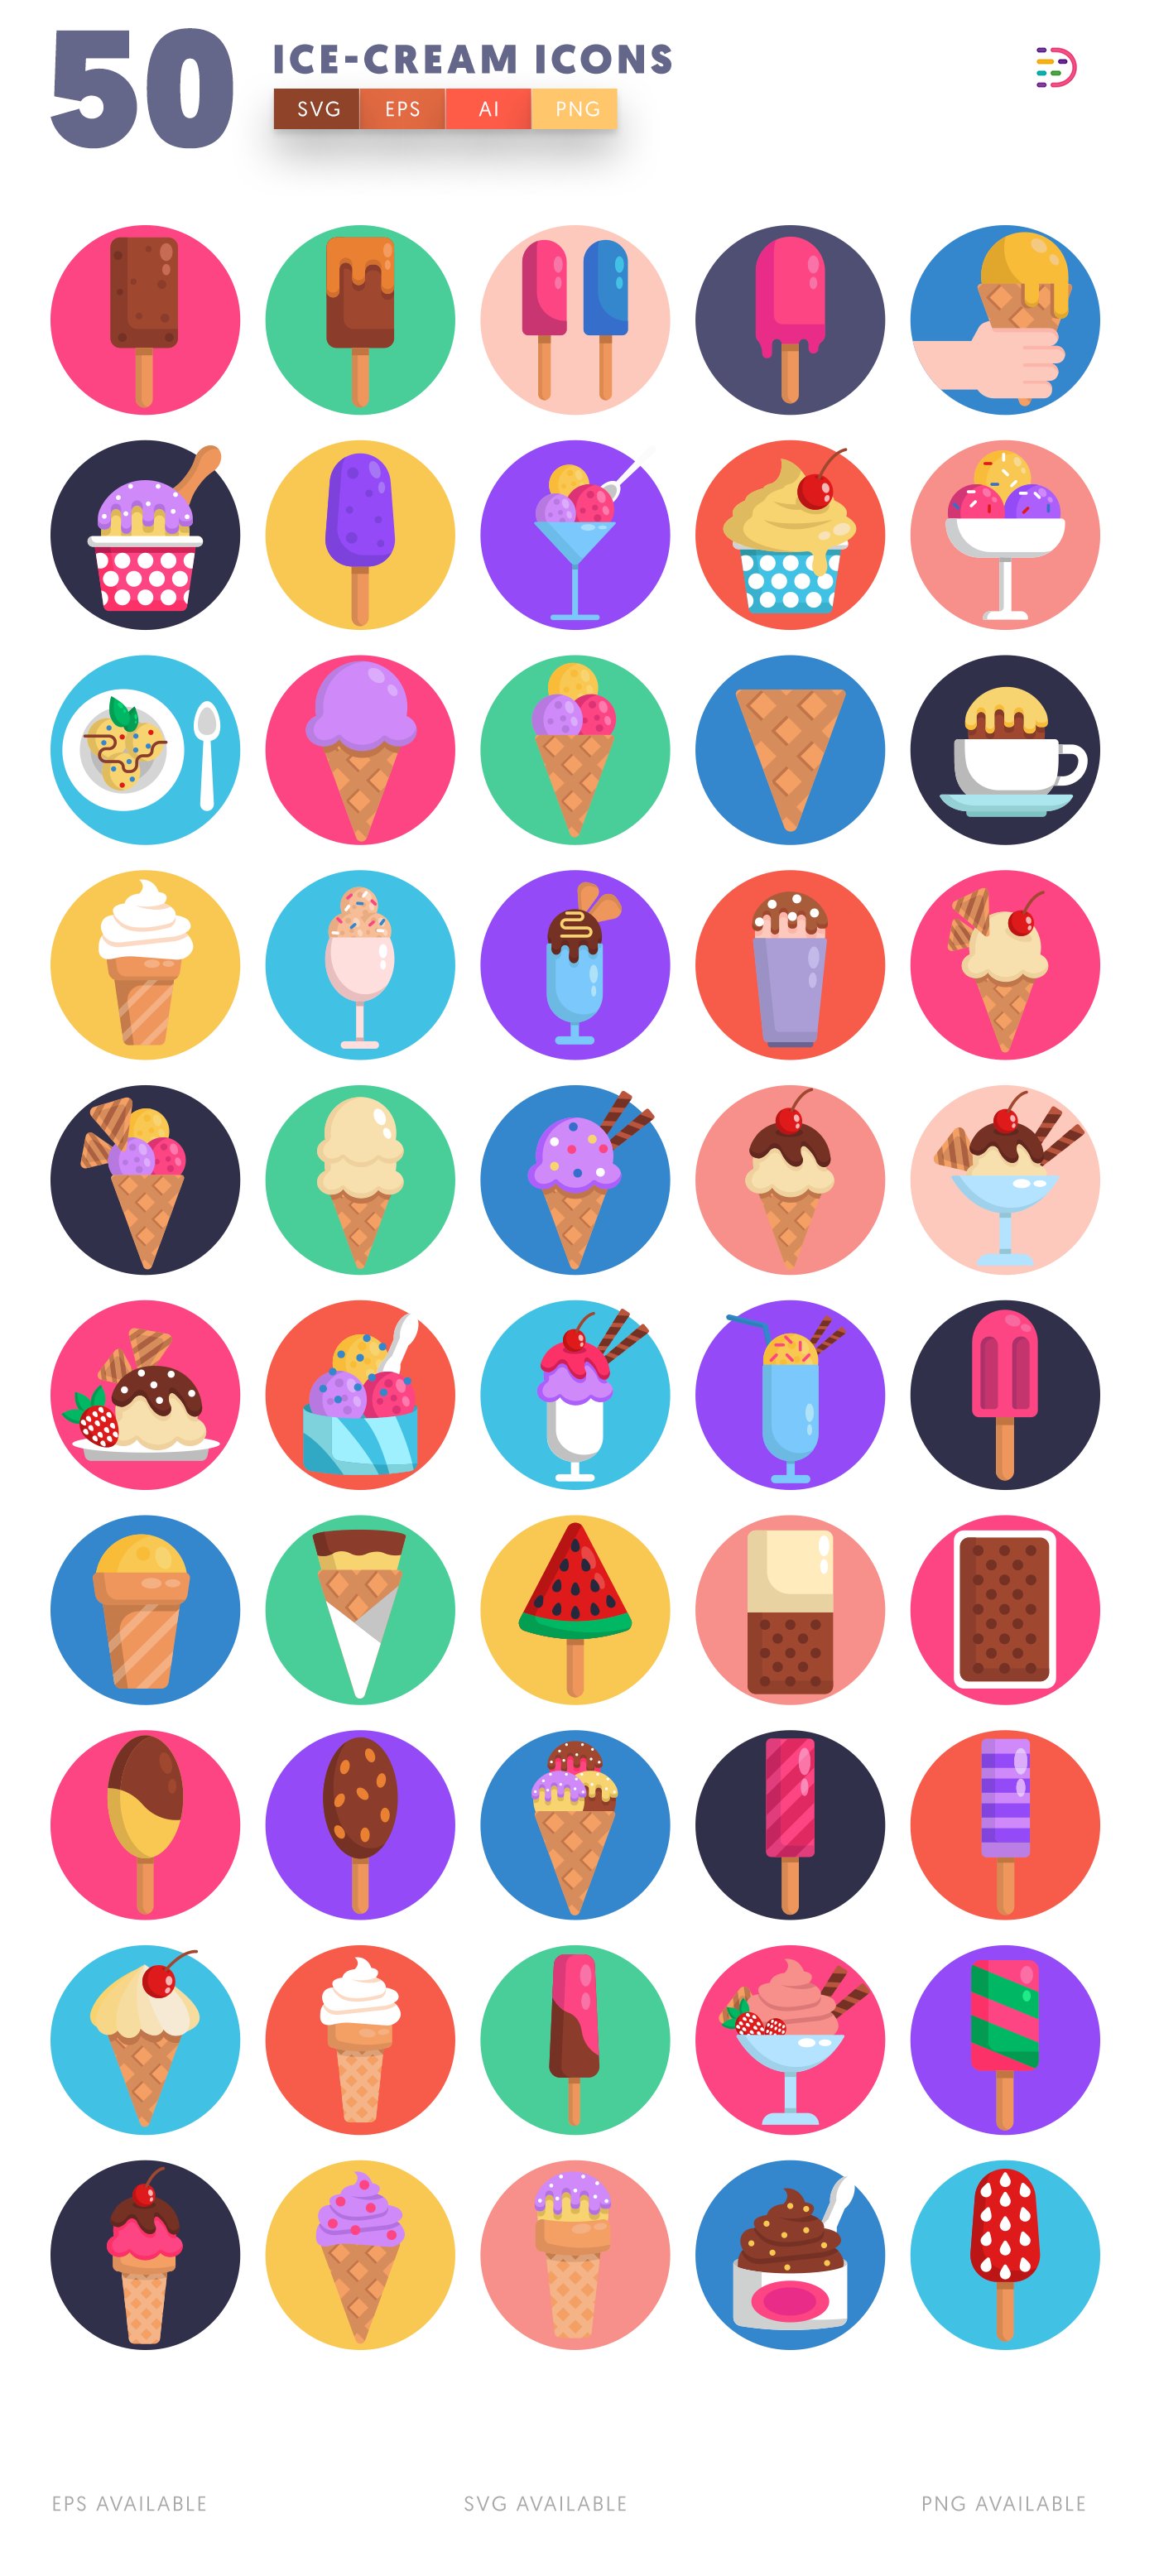 icecream icons 2 676